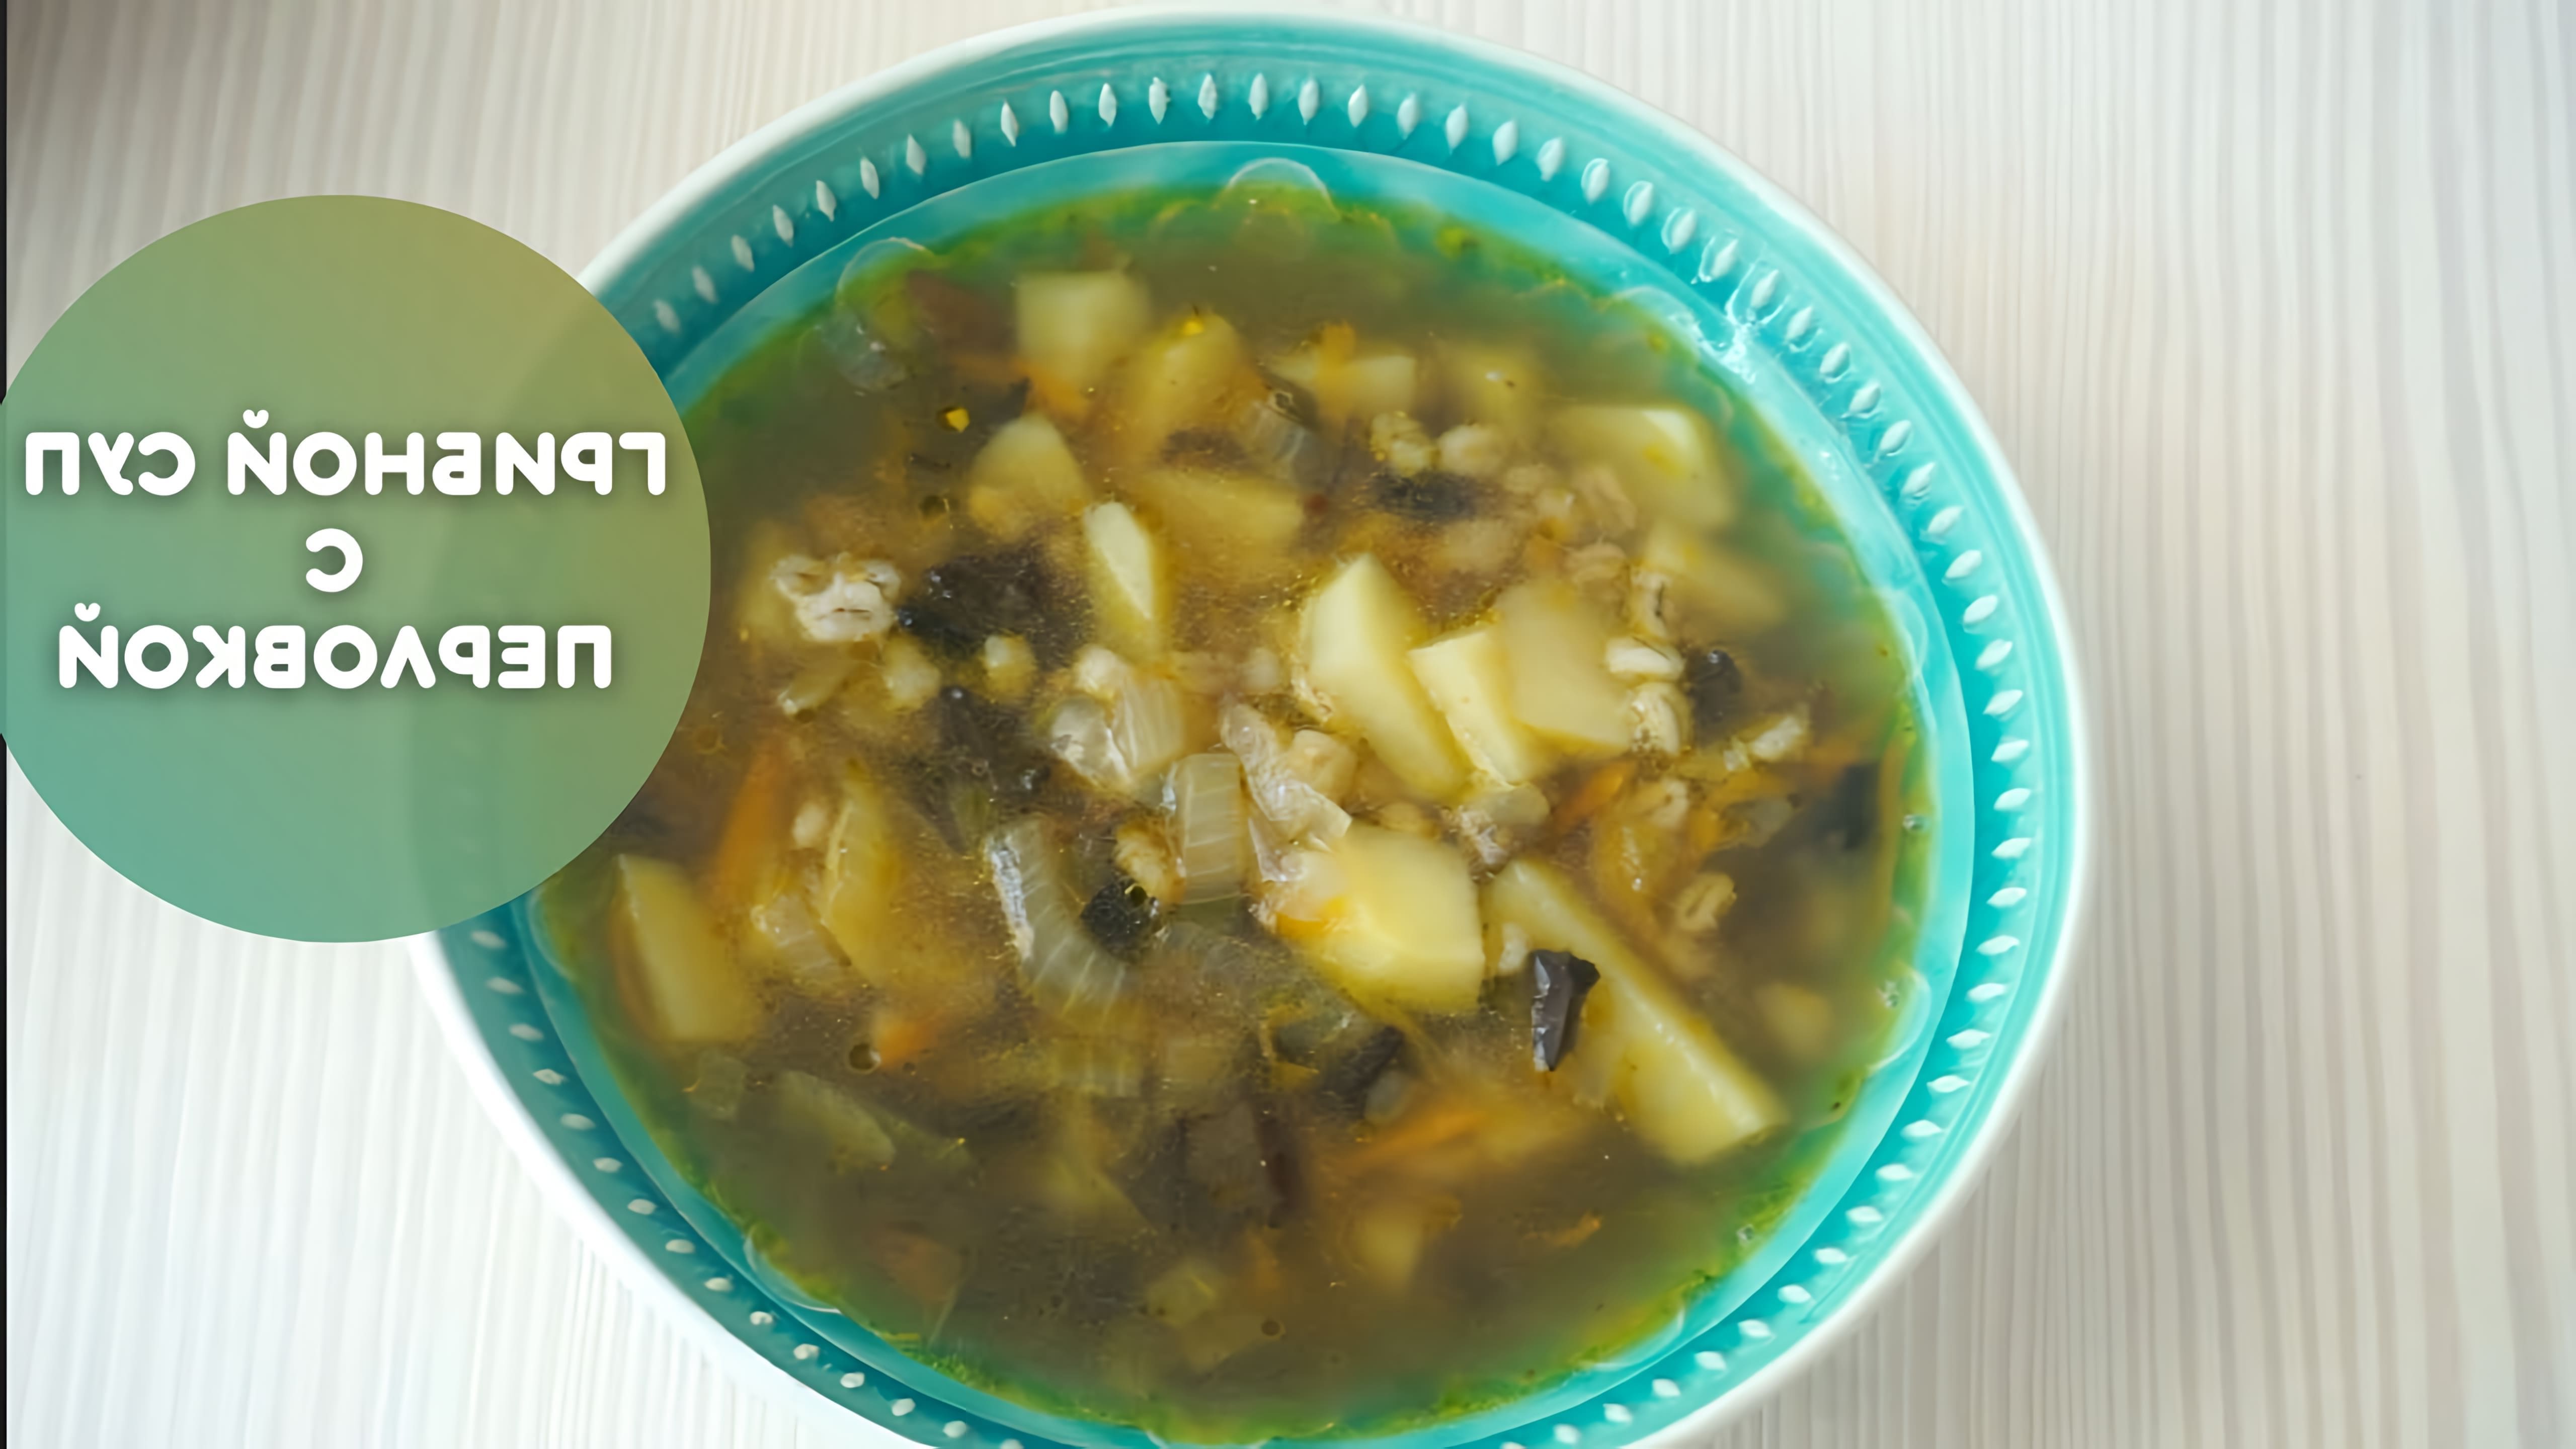 В этом видео-ролике будет показан рецепт приготовления супа из сушеных грибов с перловкой, который был популярен в СССР